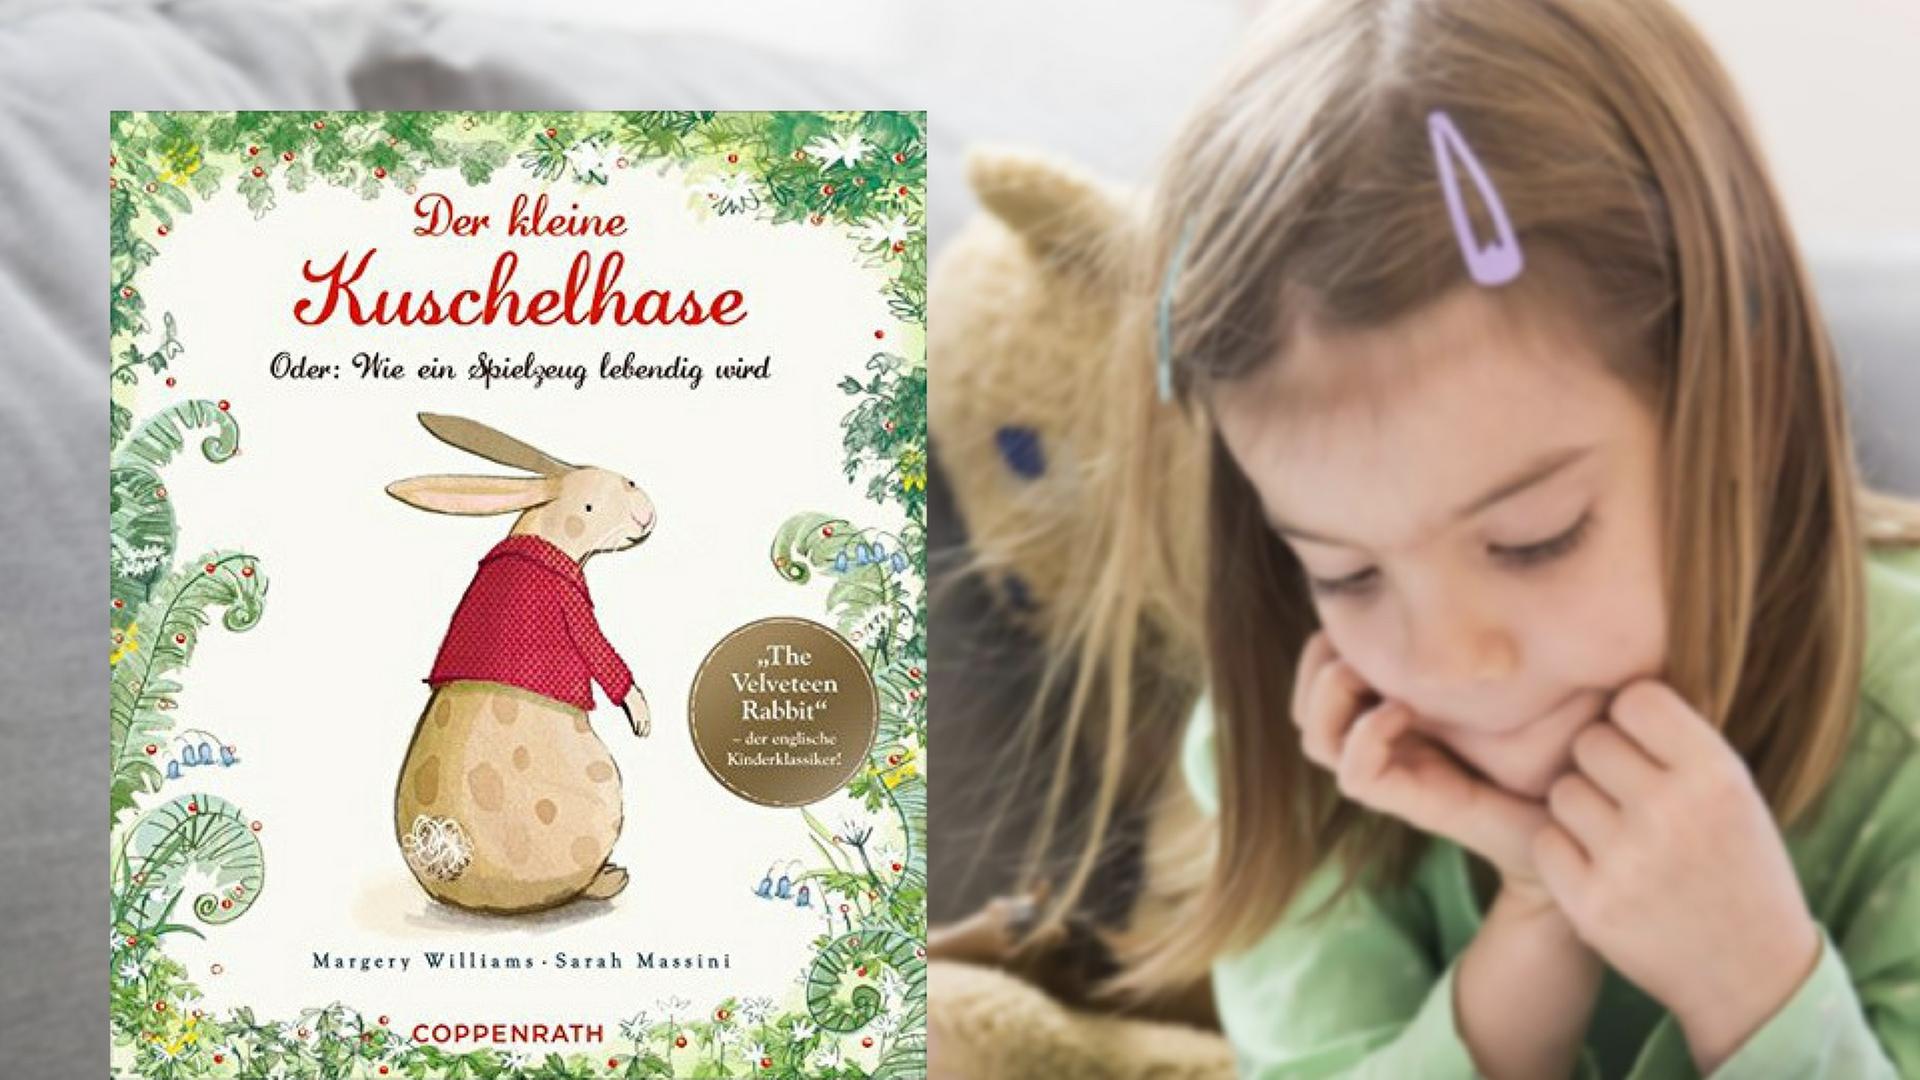 Buchcover "Der kleine Kuschelhase" von Margery Williams, im Hintergrund ein lesendes Mädchen